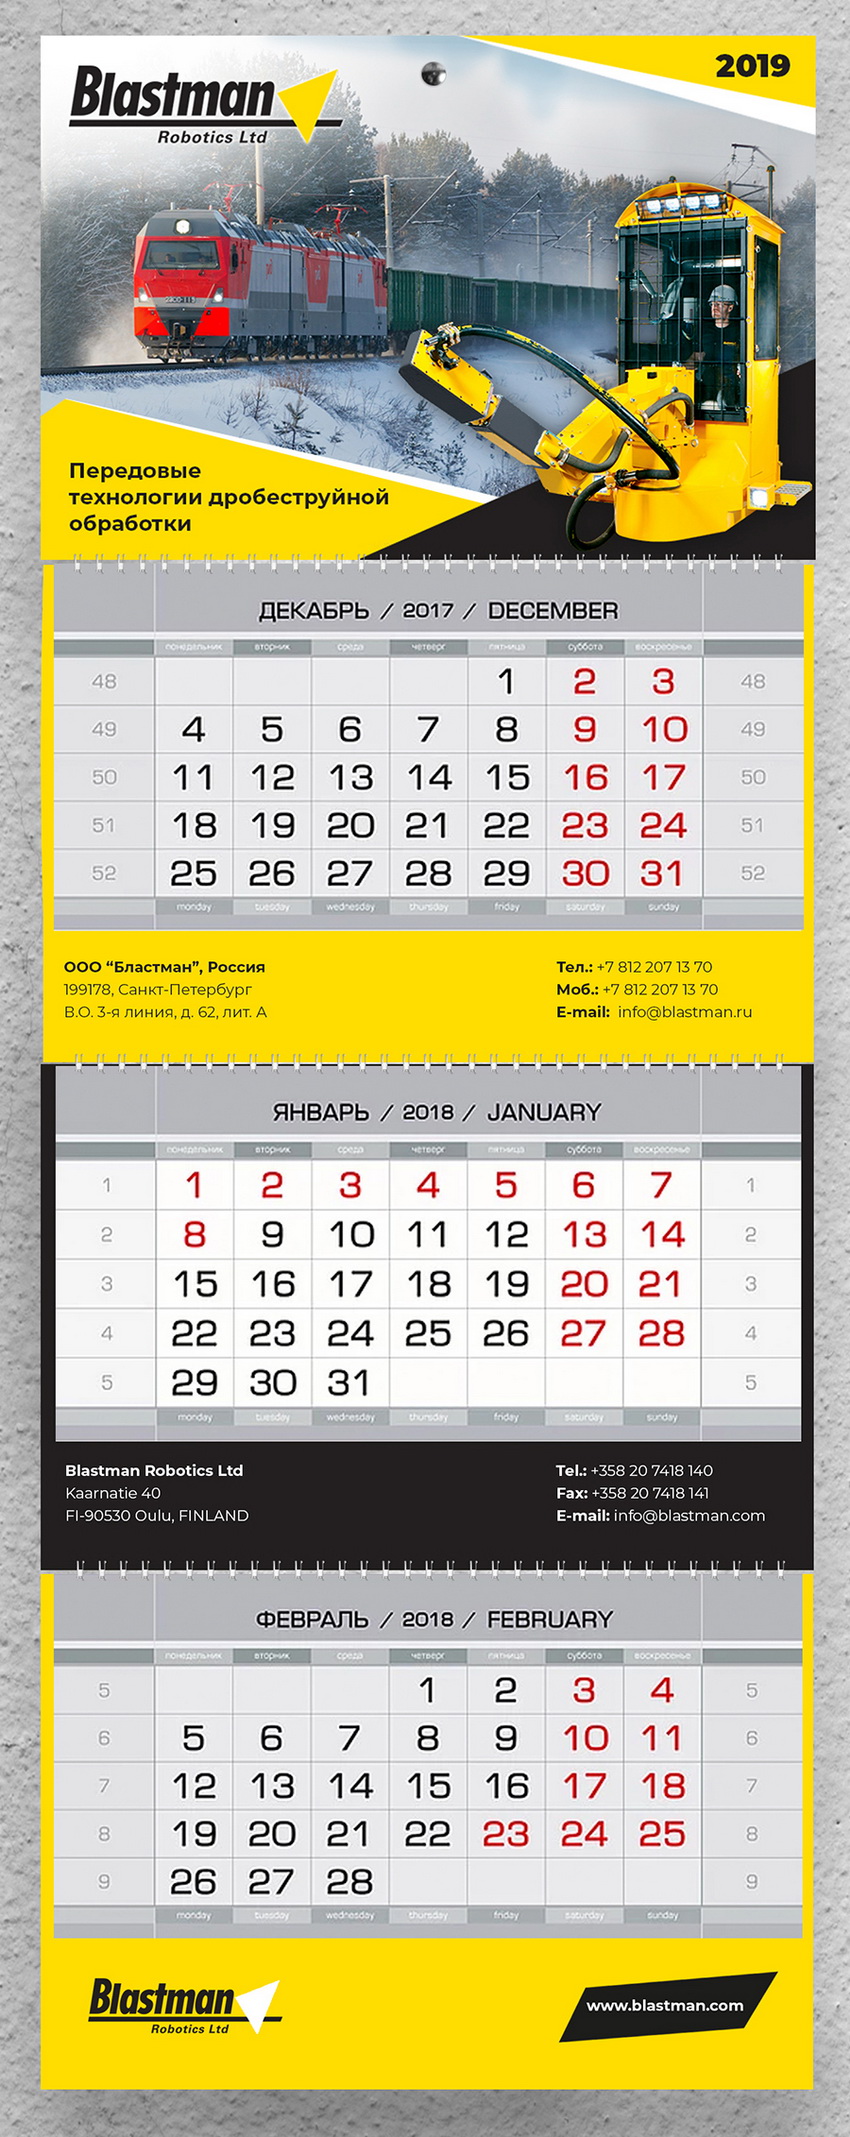 Дизайн новогоднего календаря для компании Blastman Robotics Ltd.